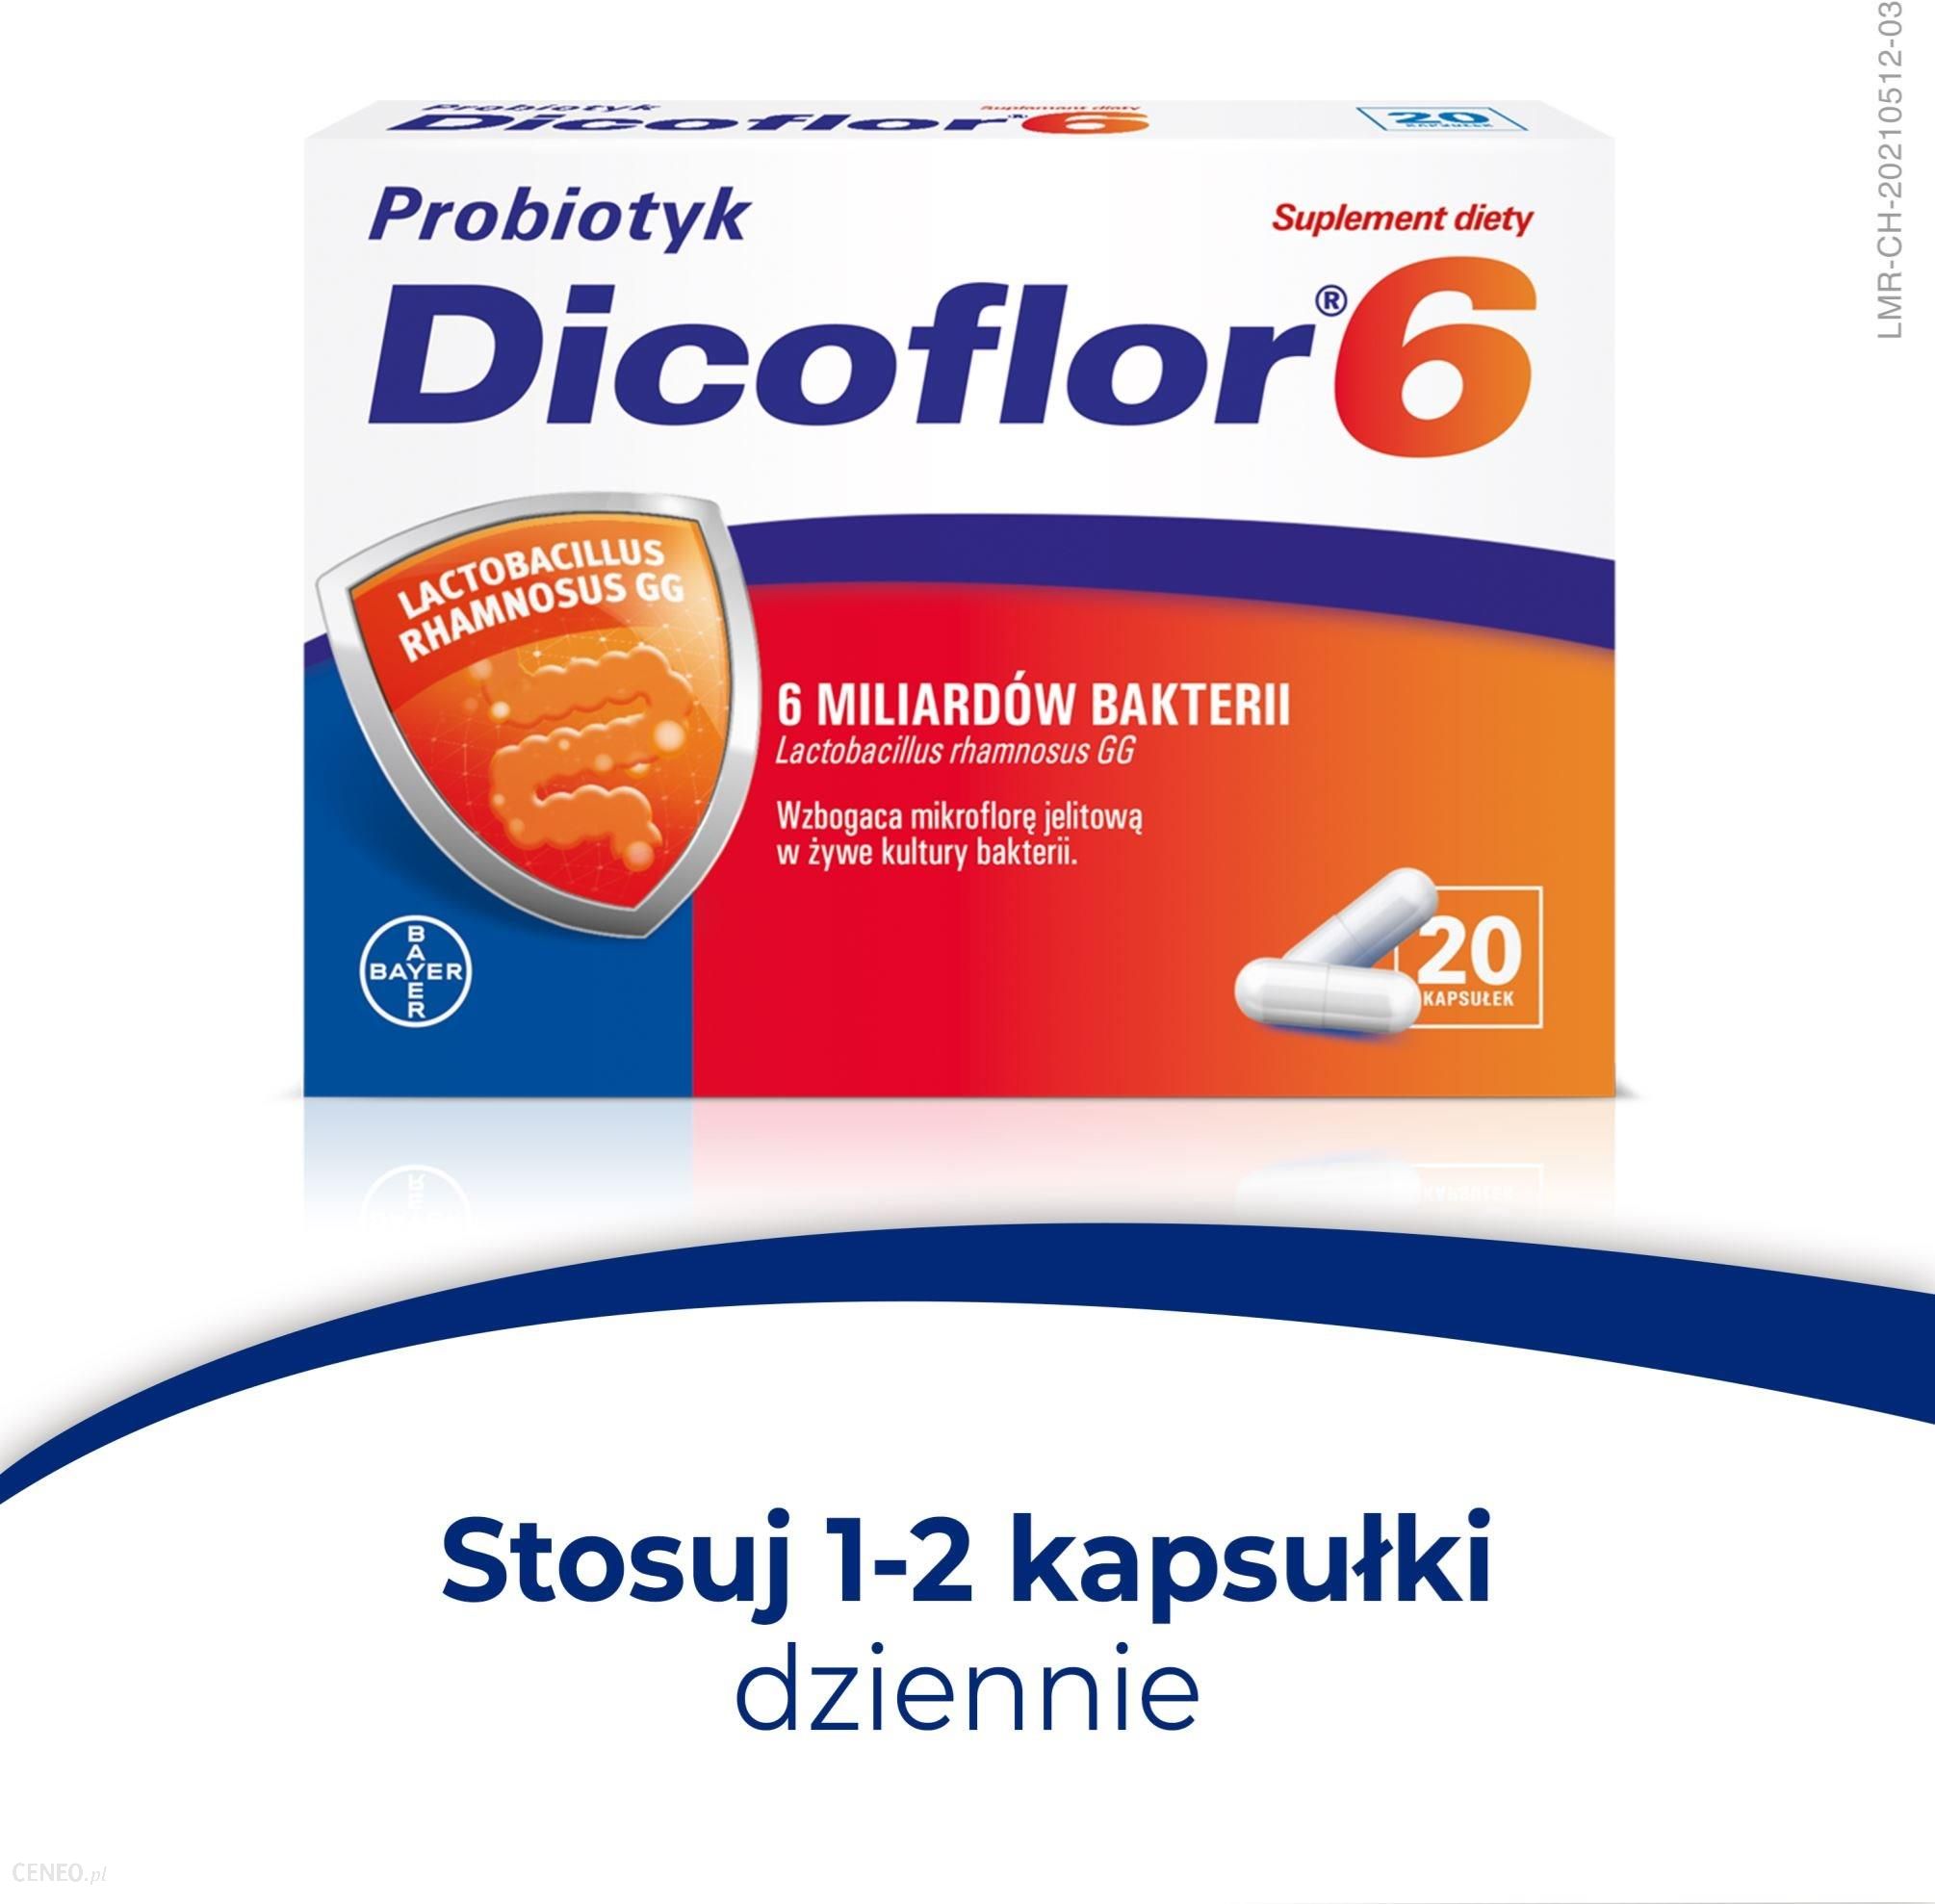 Dicoflor 6 20 kaps